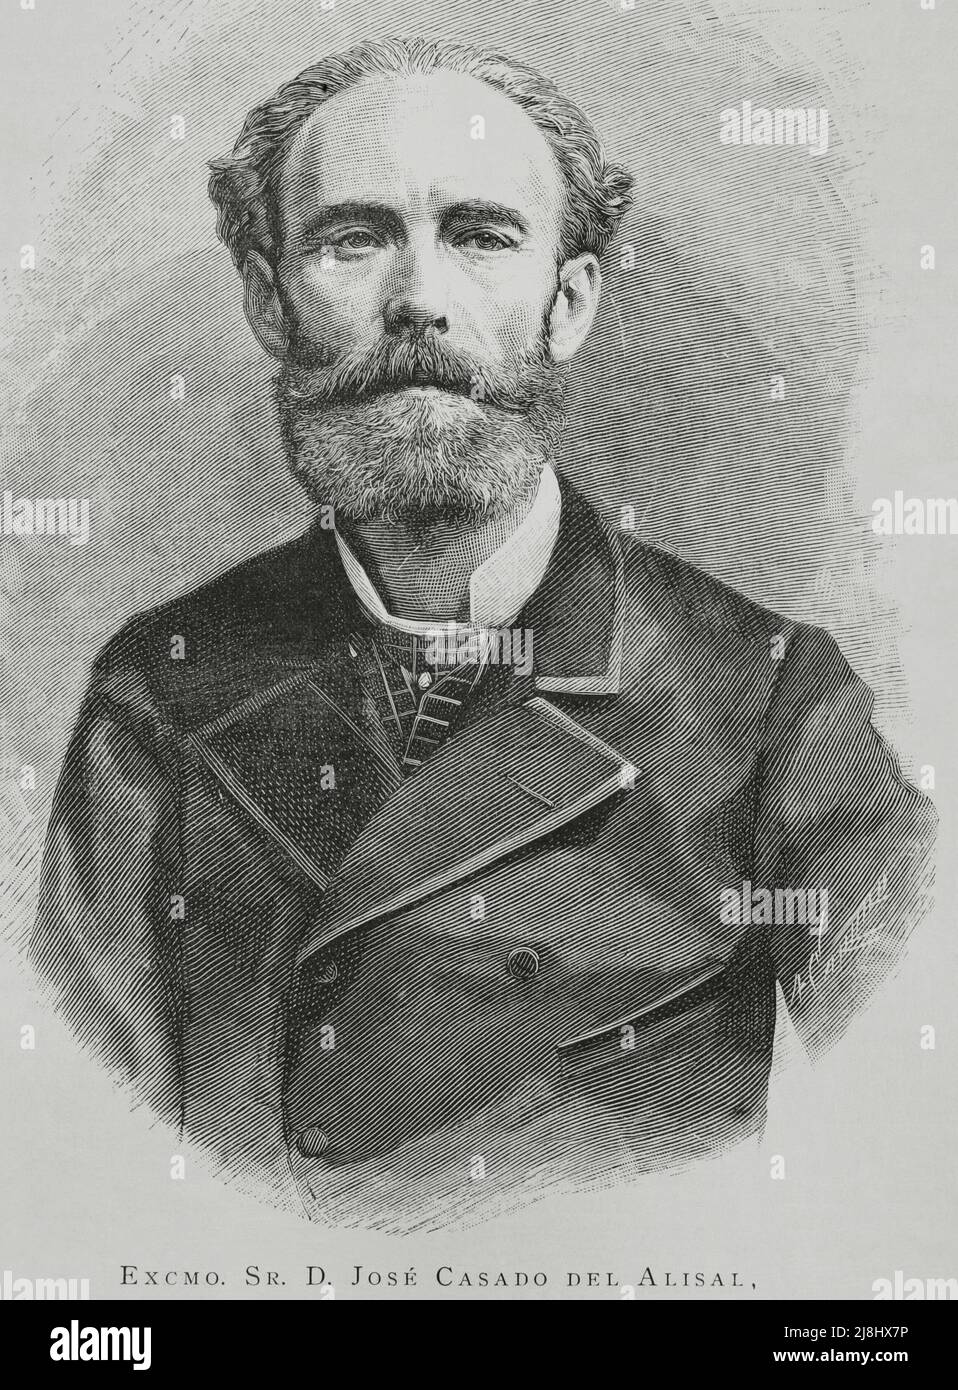 José María Casado del Alisal (1832-1886). Spanischer Maler. Hochformat. Stich von Arturo Carretero, 1882. Stockfoto